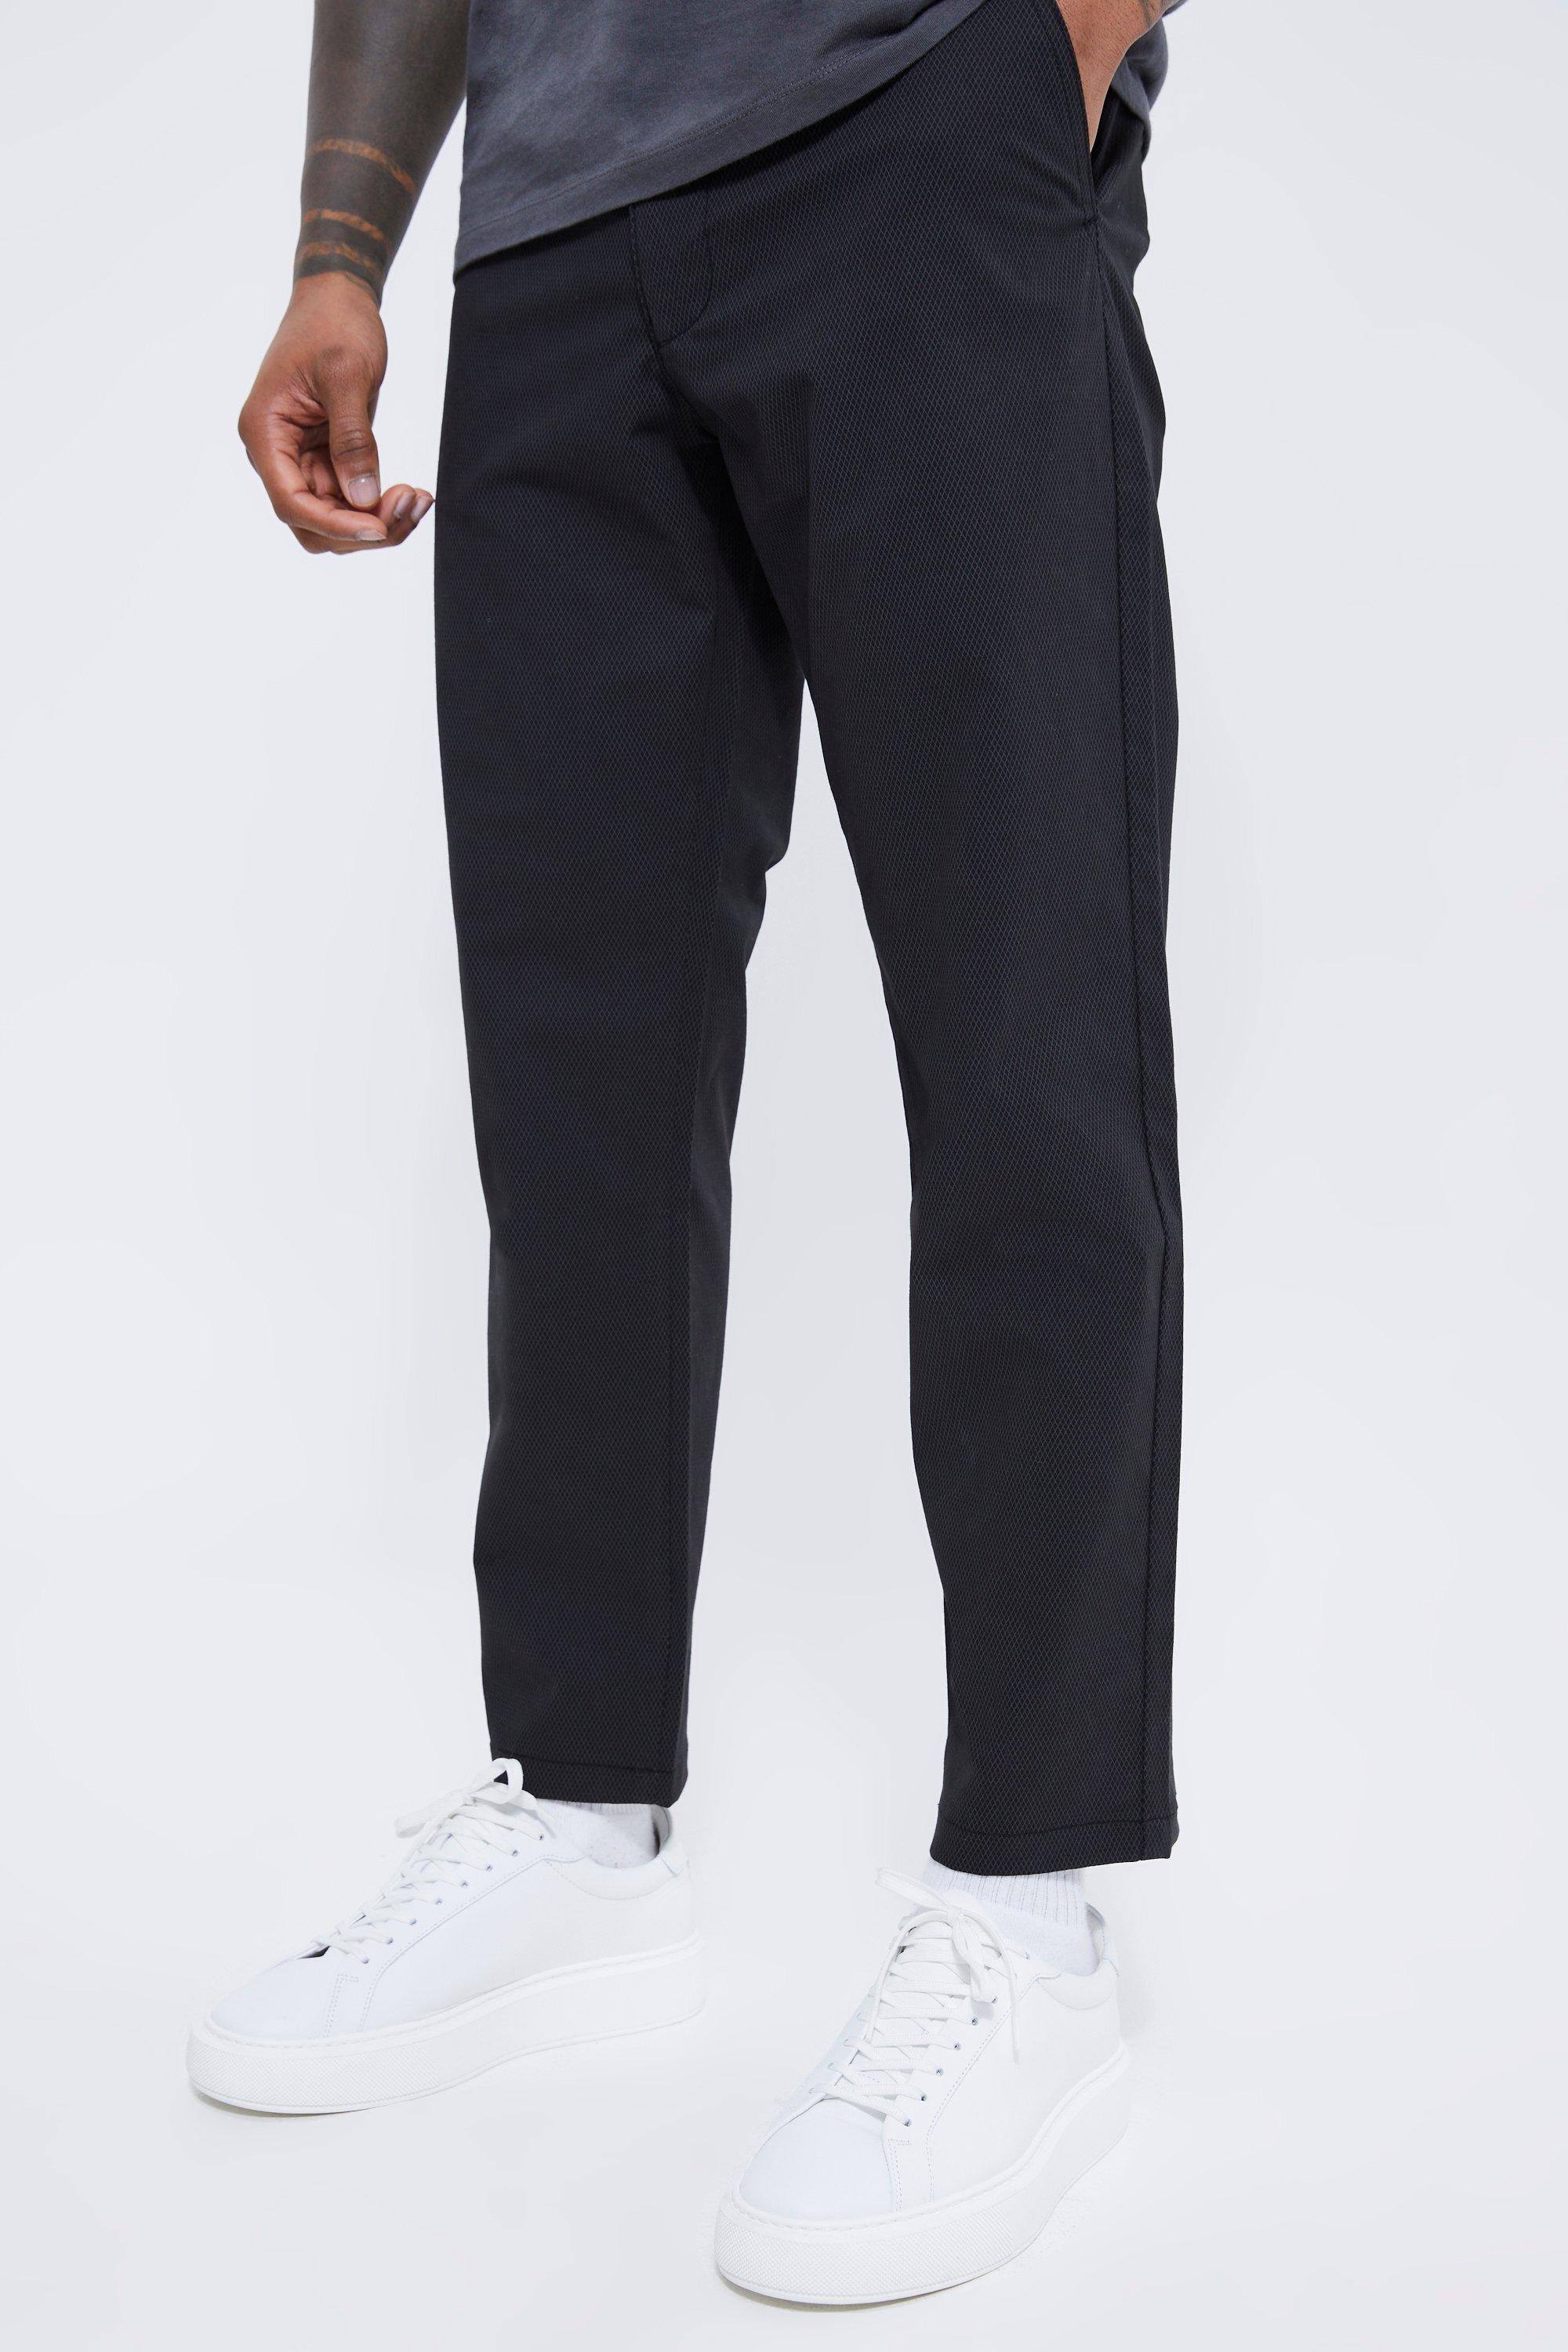 pantalon chino court texturé homme - noir - 34, noir